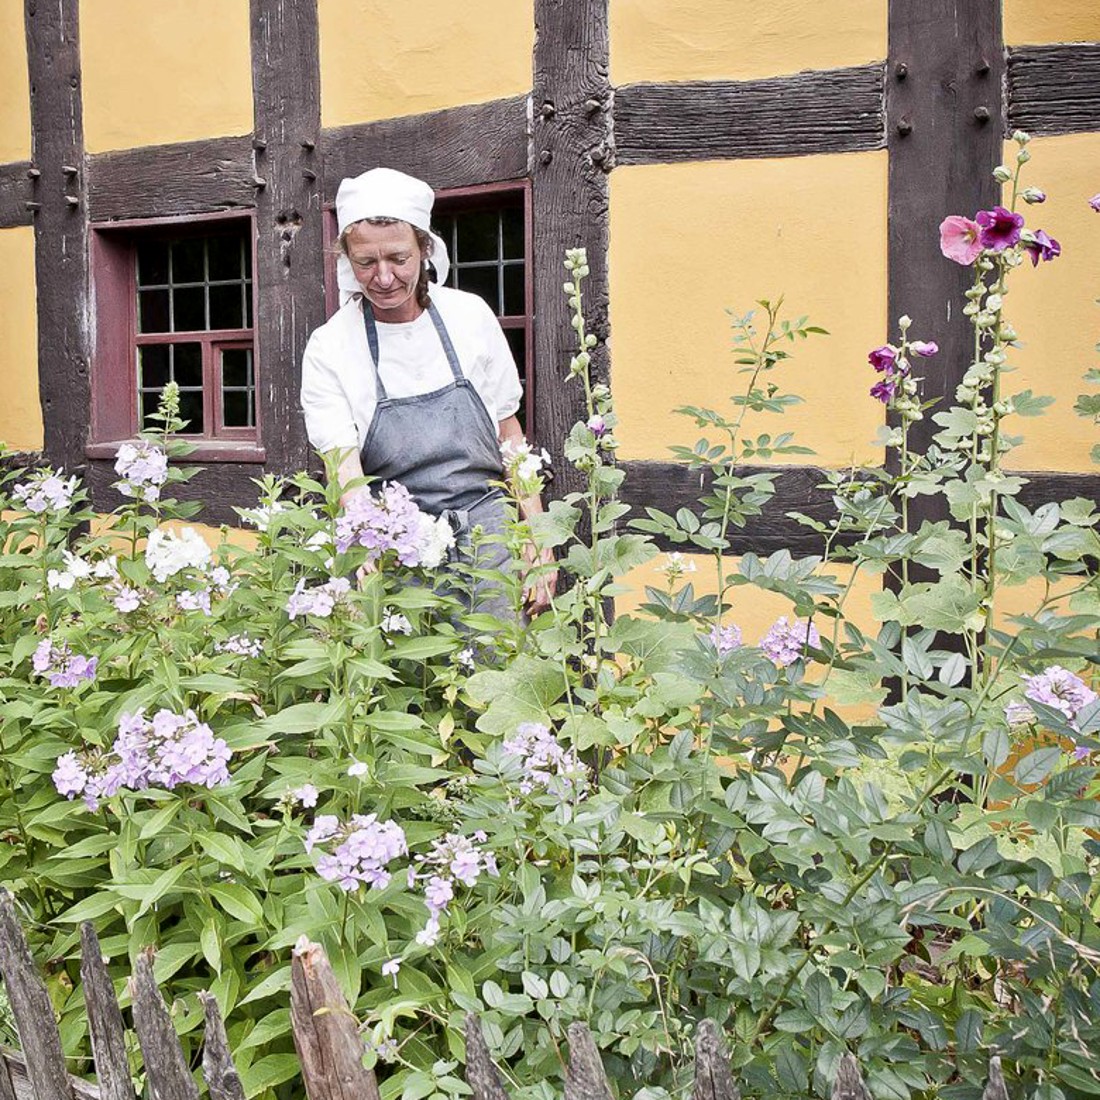 Frau mit weißem Kopftuch steht hinter hohen Pflanzen vor einem gelben Fachwerkhaus